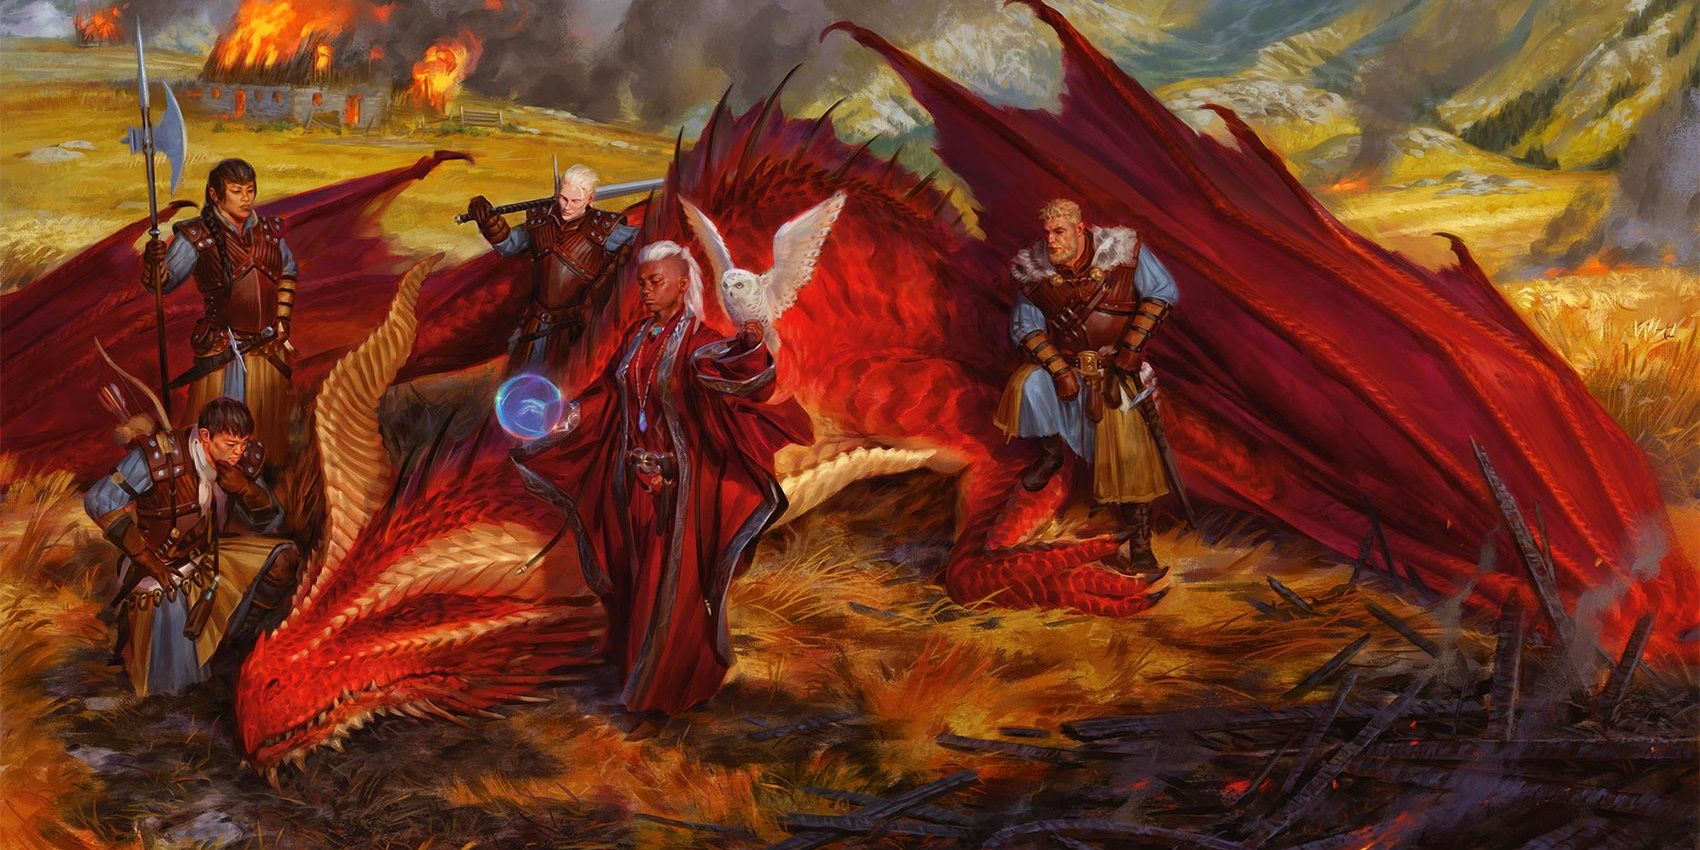 Personagens cercam um dragão vermelho abatido na campanha Dragonlance de Dungeons & Dragon.